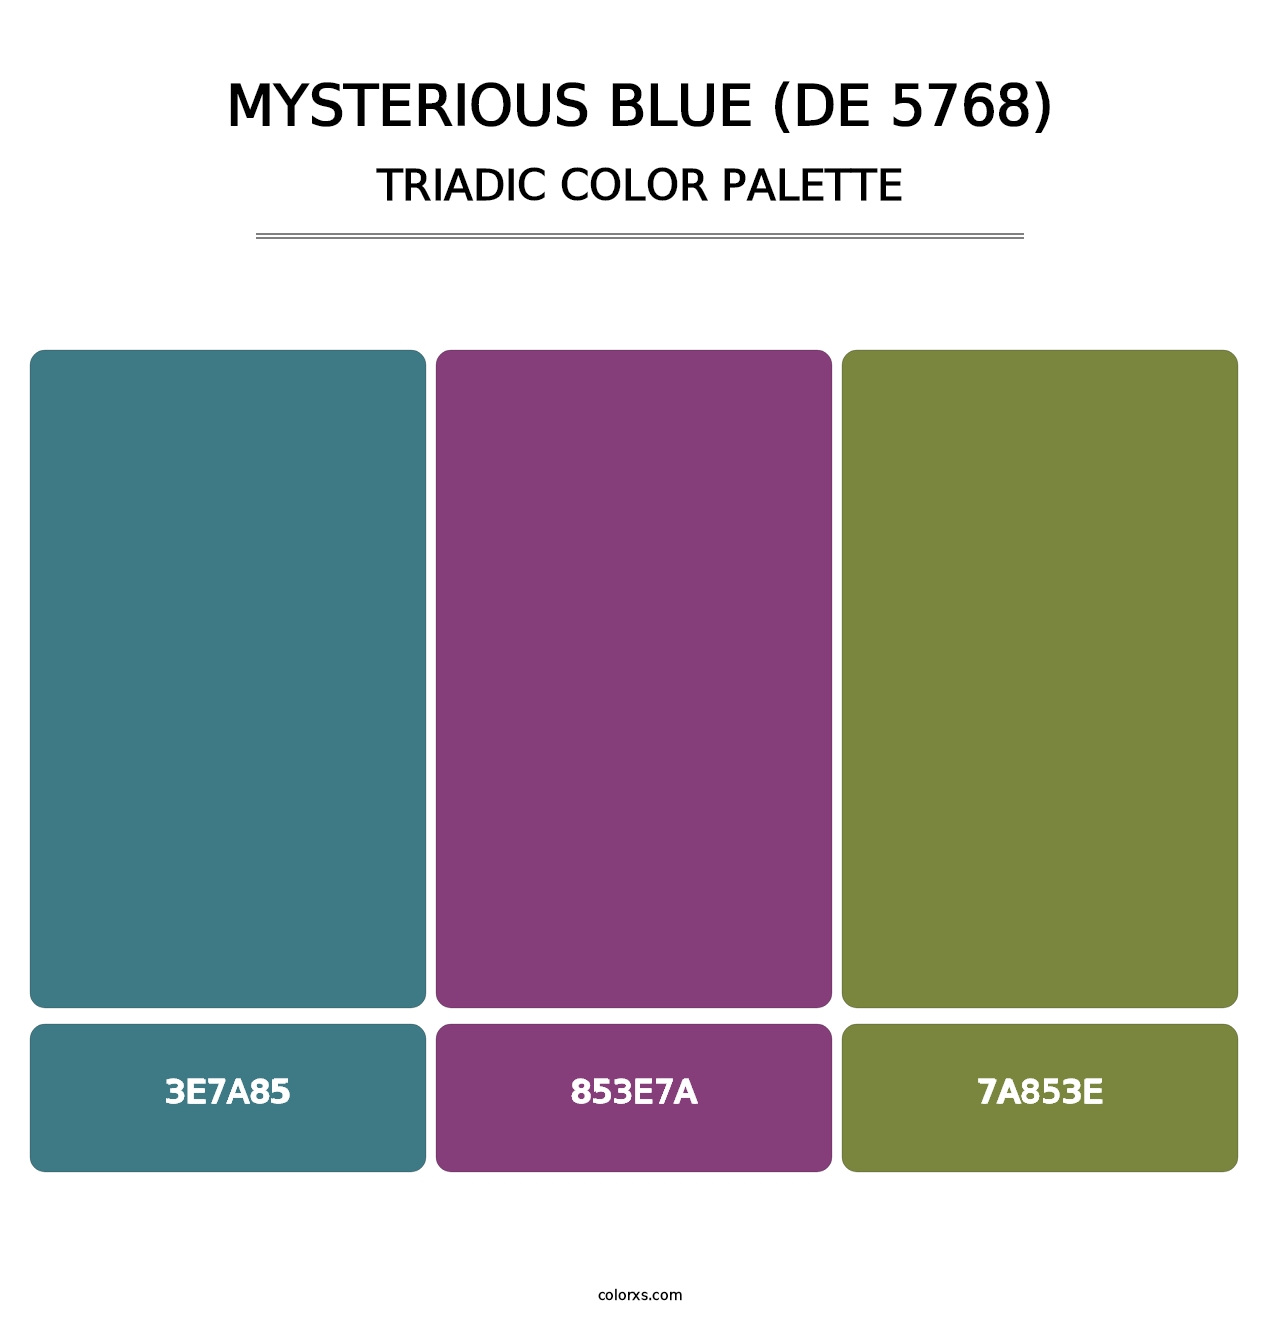 Mysterious Blue (DE 5768) - Triadic Color Palette